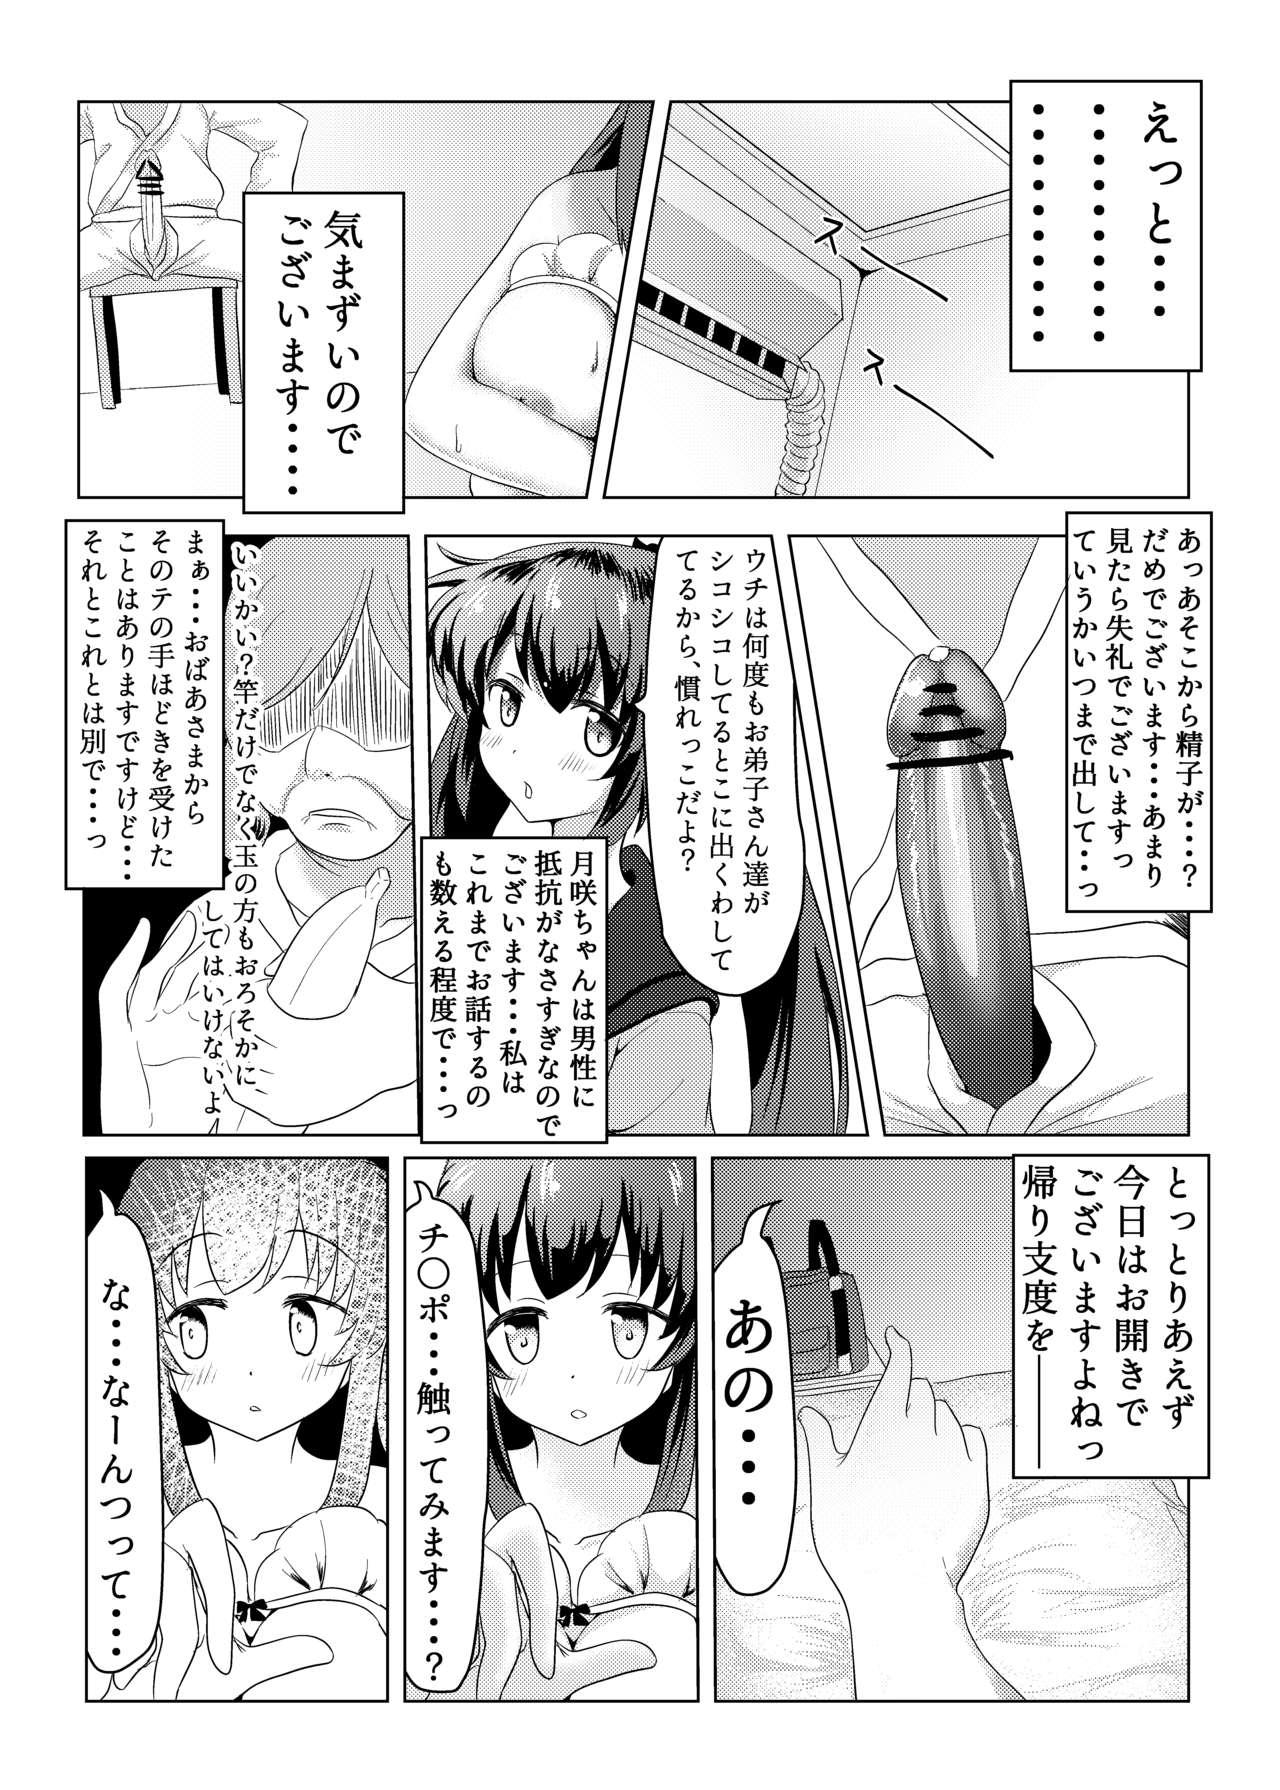 Dorm Tsukuyo ga Waruinodegozaimasu - Puella magi madoka magica side story magia record Casal - Page 8